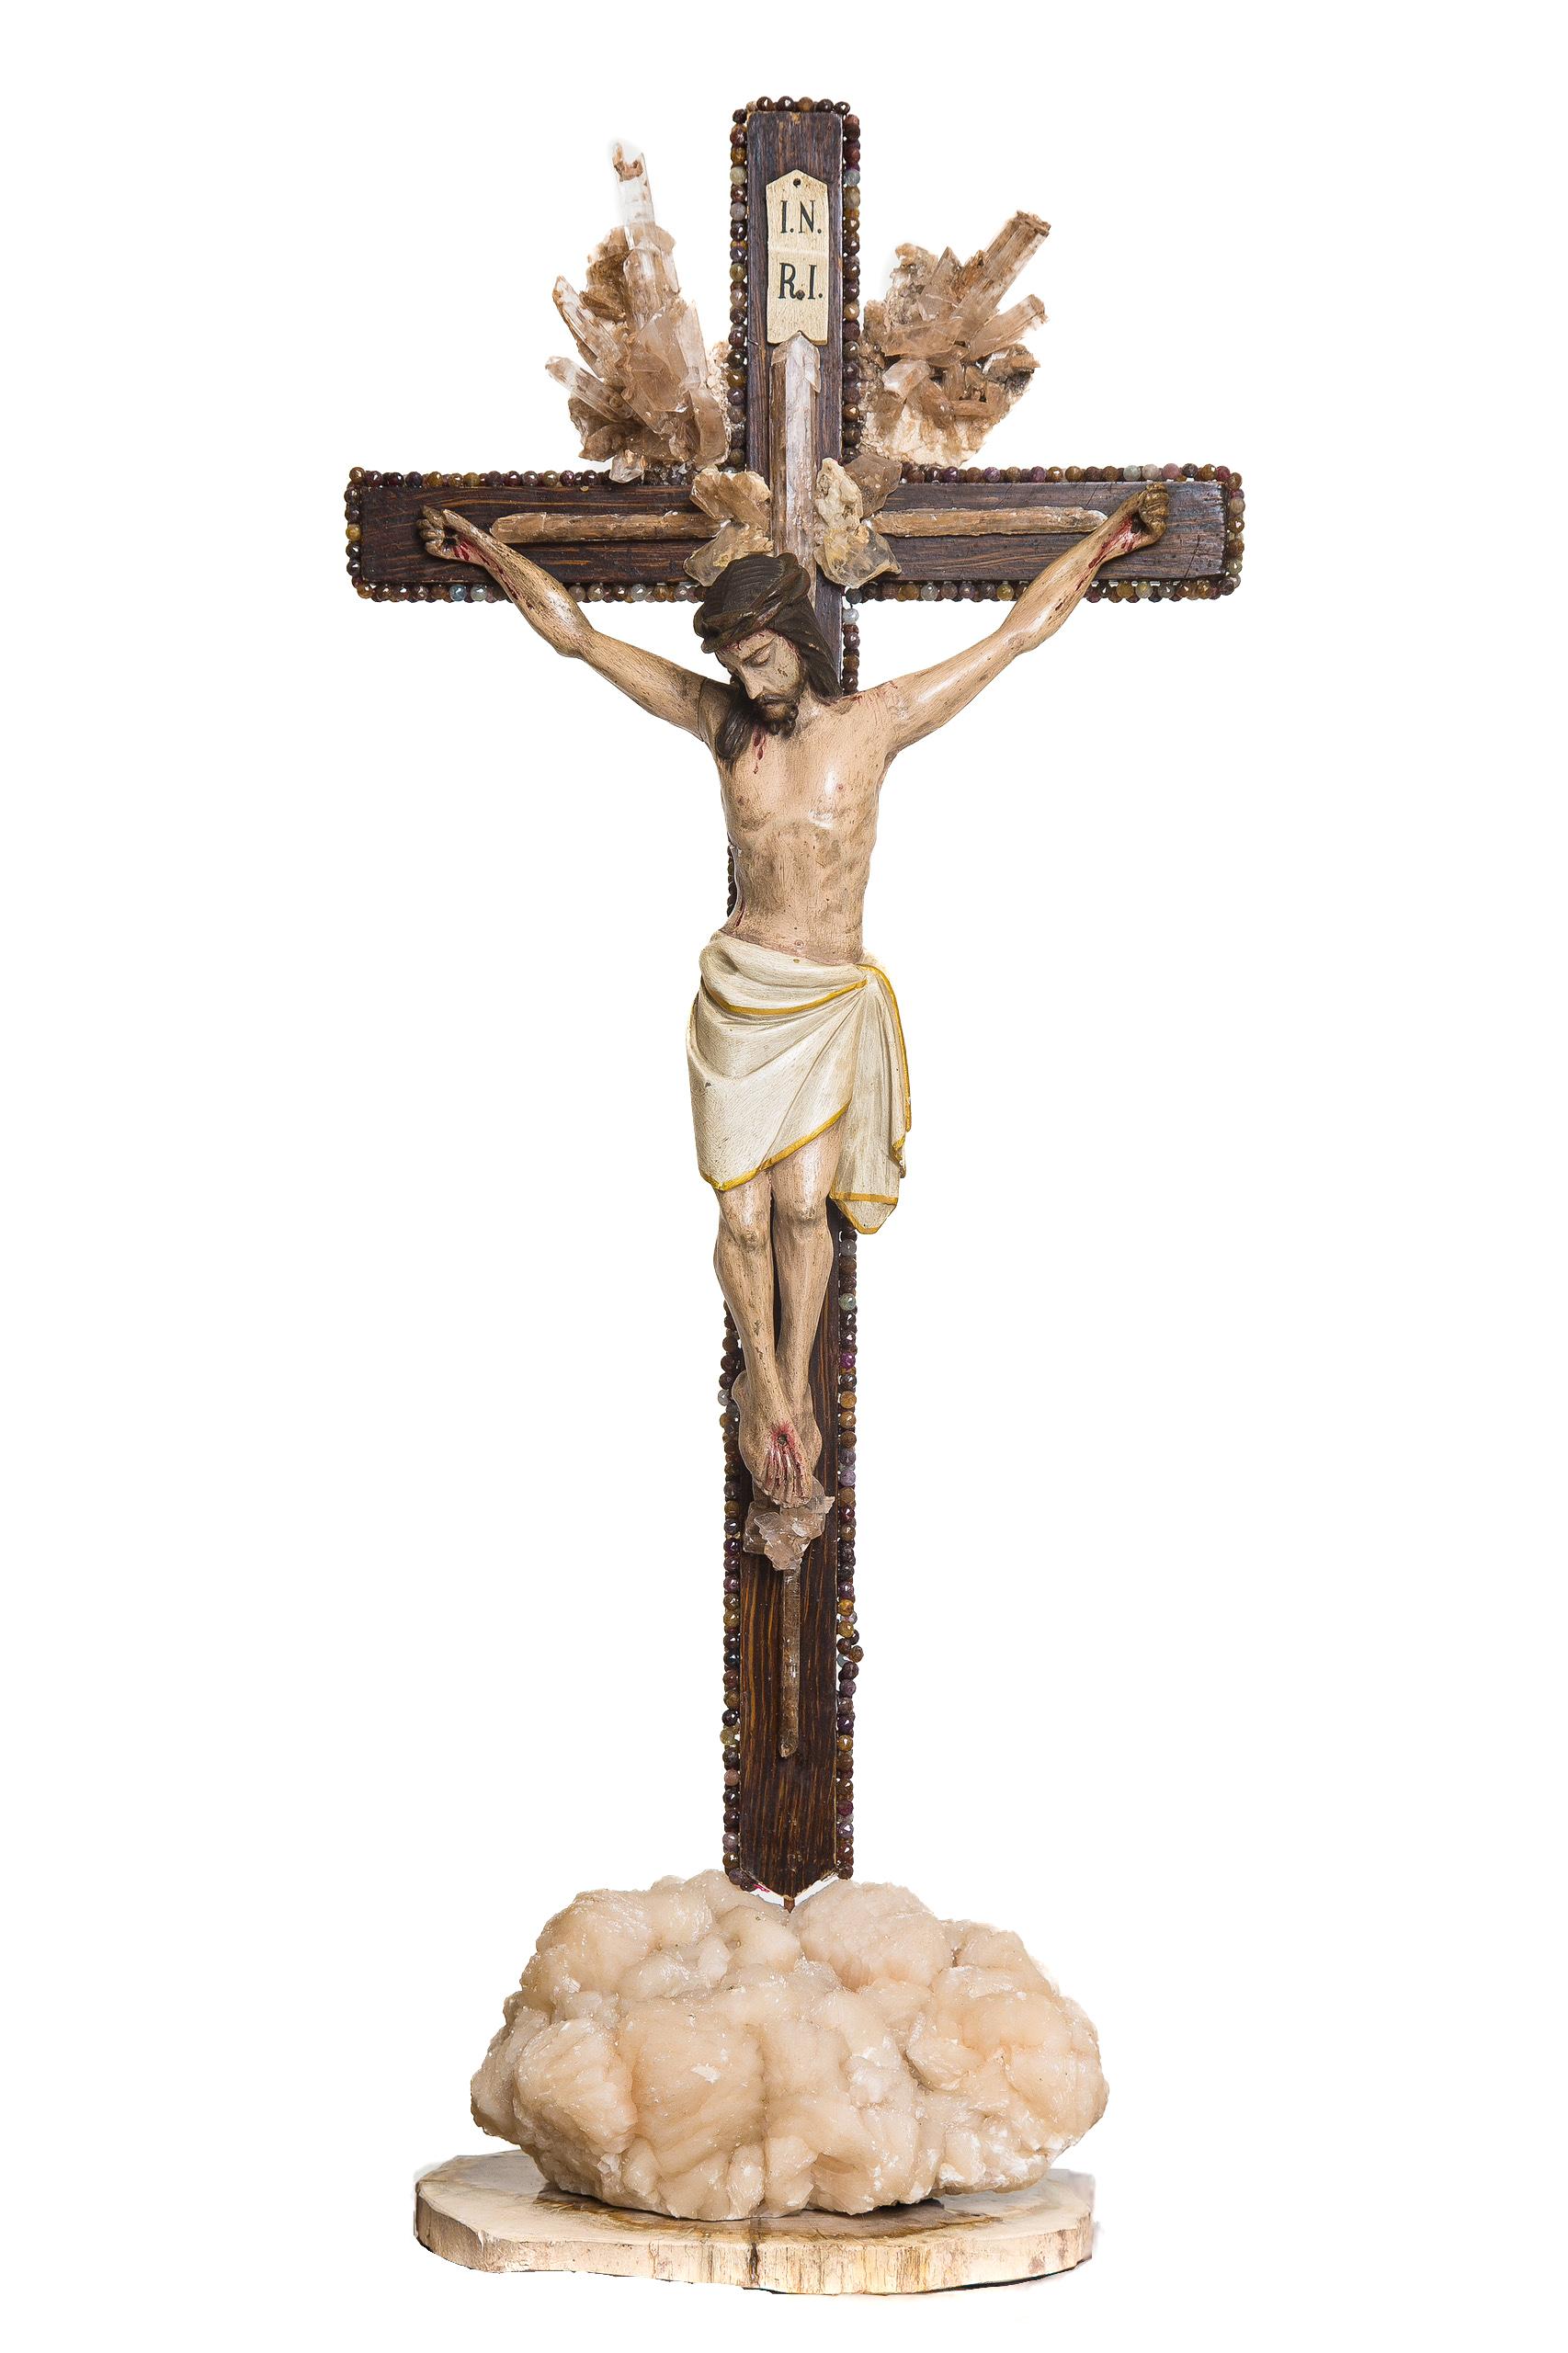 Skulpturales italienisches Kruzifix aus dem 18. Jahrhundert mit Selenit in der Matrix und mit Edelsteinperlen um das Kreuz verziert. Der Selenit in der Matrix bildet die Sonnenstrahlen um das Kruzifix. Das Stück ist auf Apophyllit und versteinertem